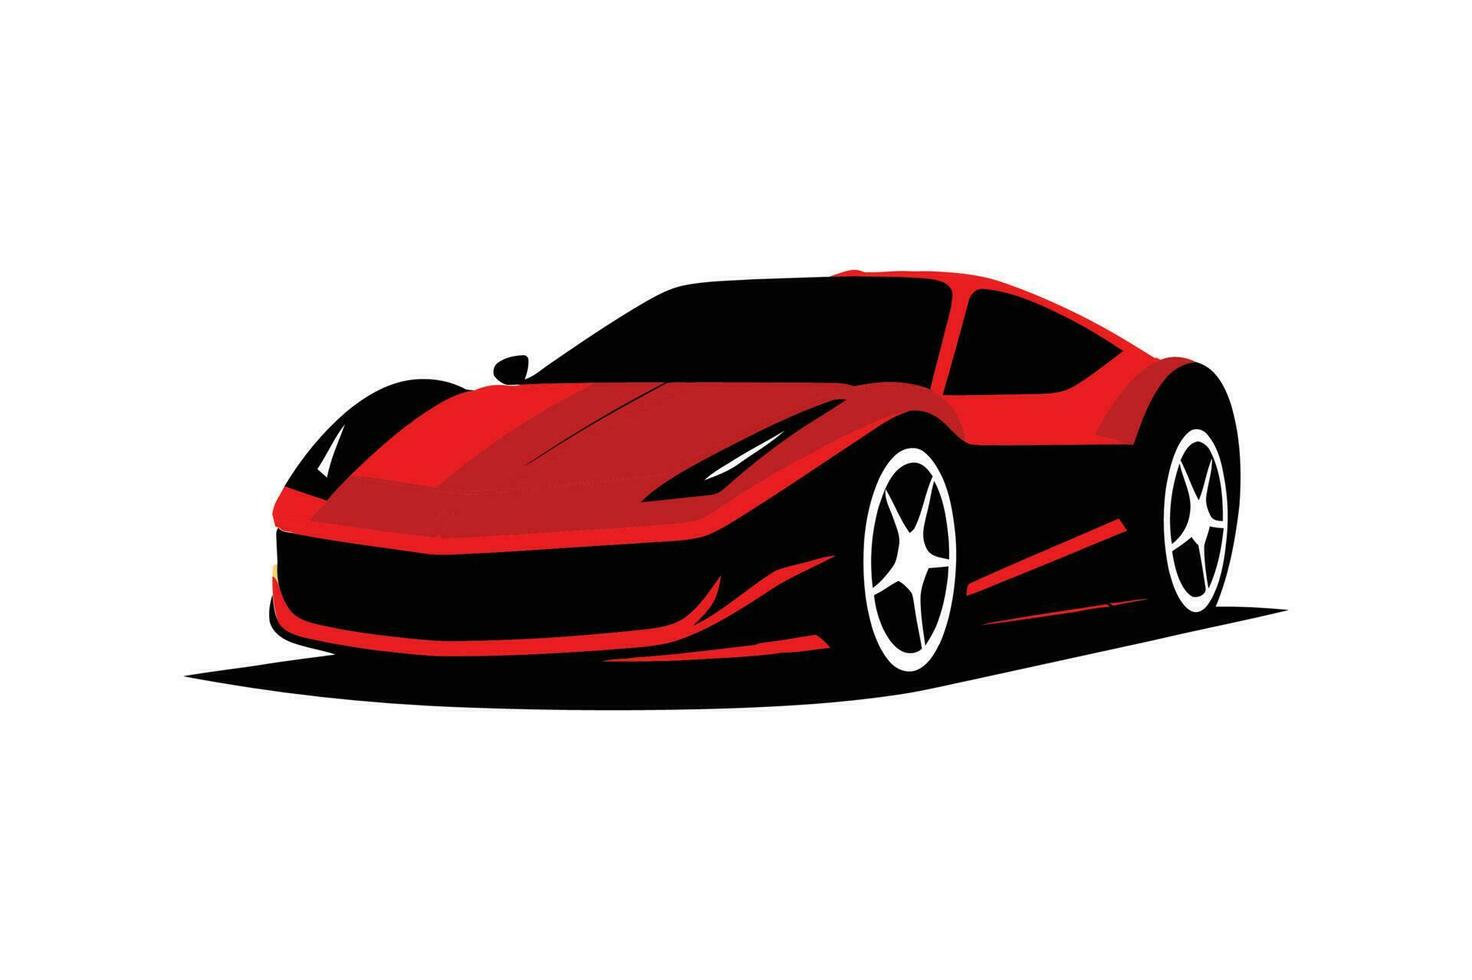 réaliste rouge sport voiture vecteur modèle illustration